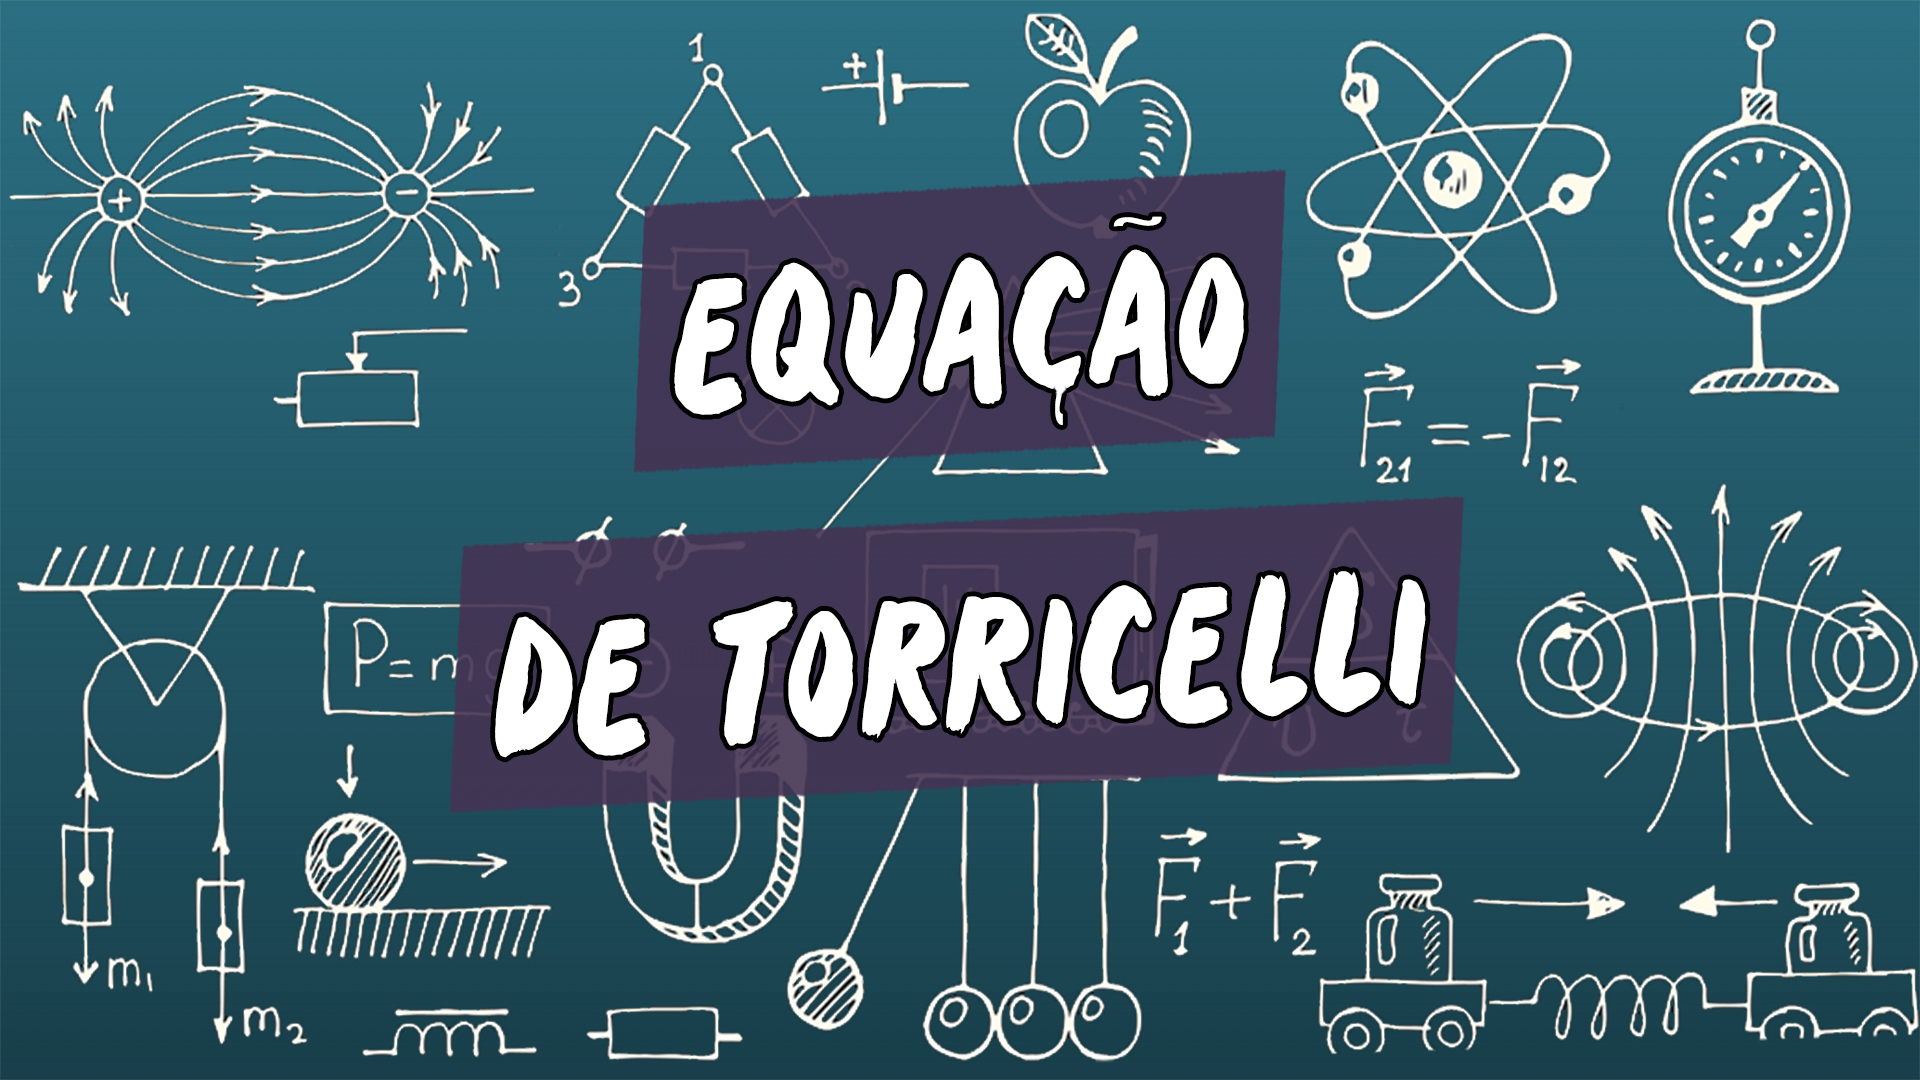 Escrito"Equação de Torricelli" sobre uma representação de vários conceitos da área da física.